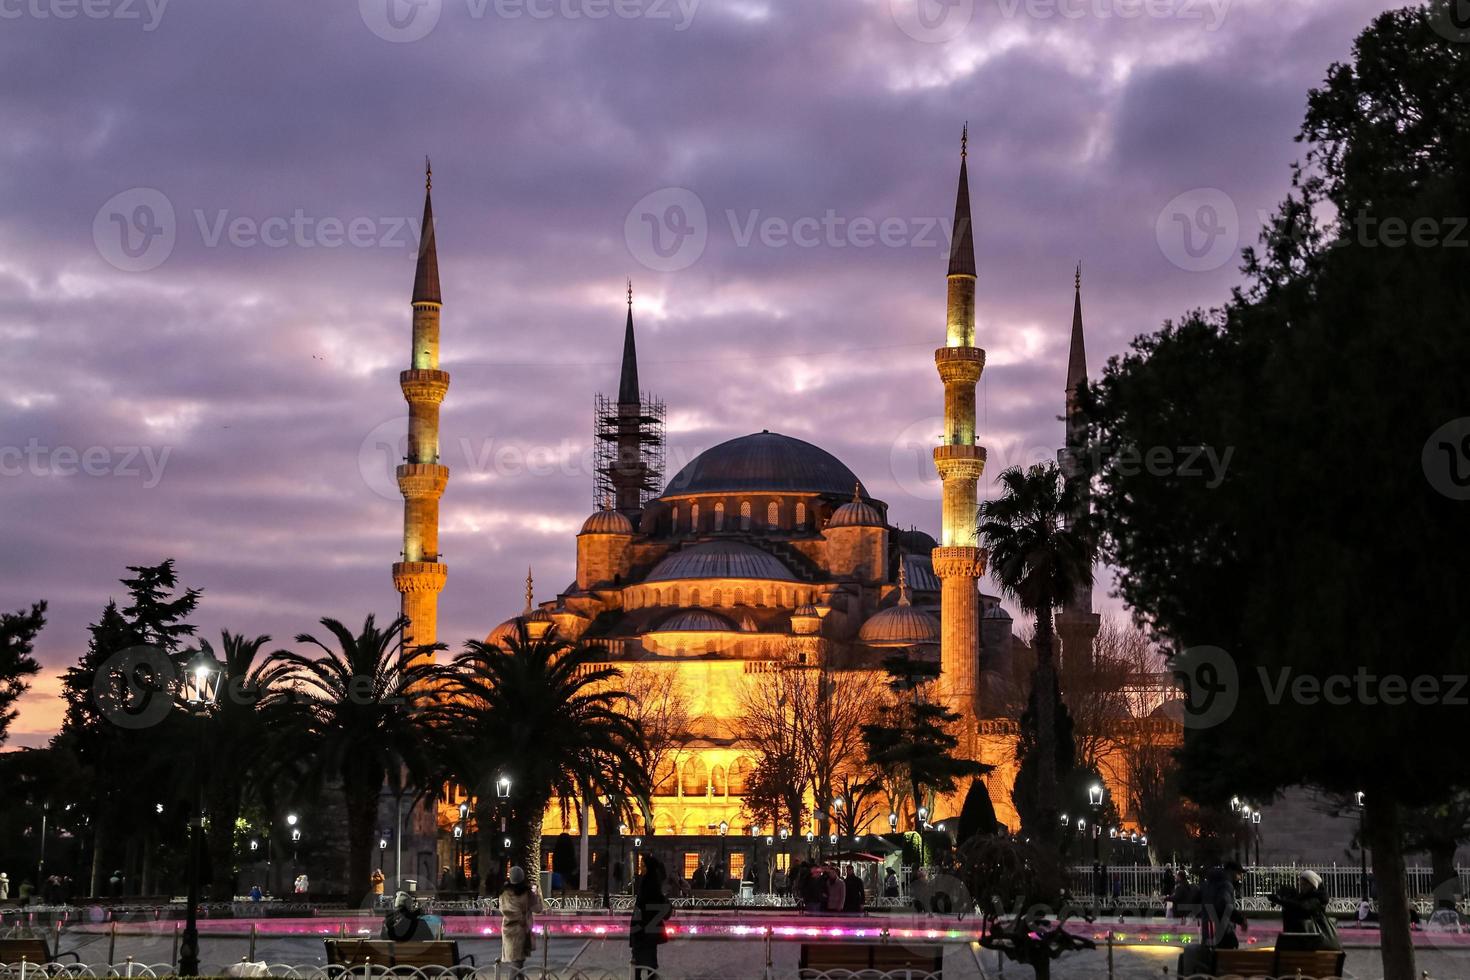 sultanahmet blå moské i istanbul, Turkiet foto